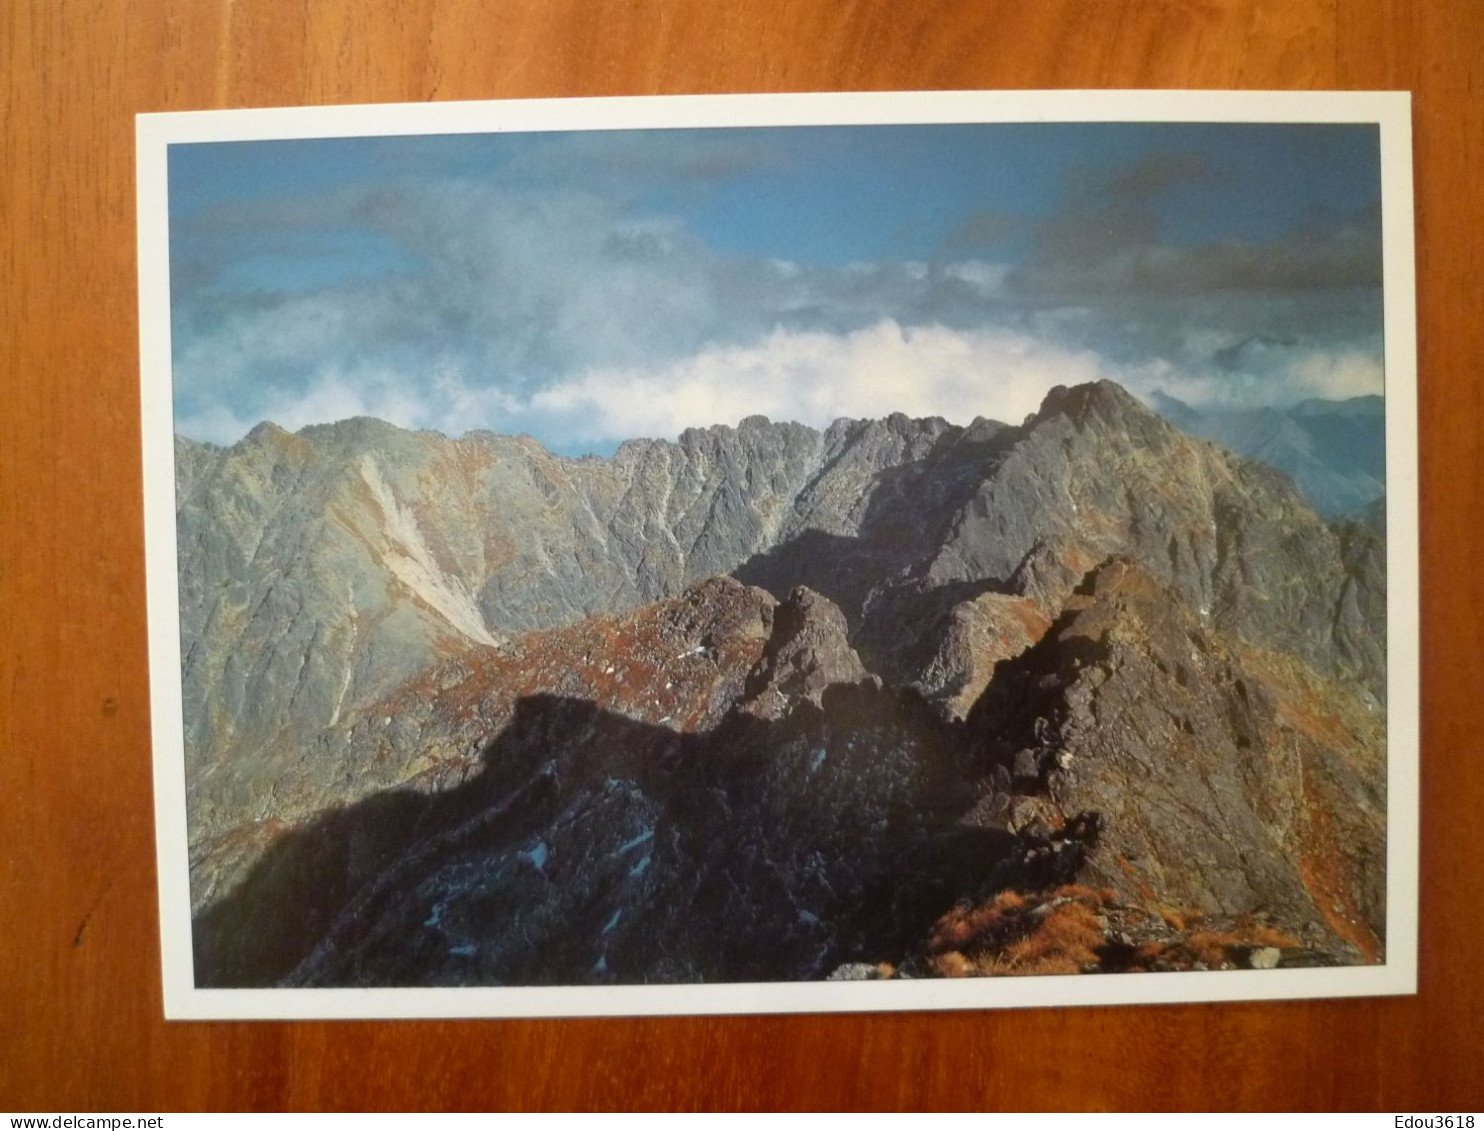 Lot 12 Carte postale Chaine montagneuse des Tatras en Pologne 21x15cm - photographe Ryszard Ziemak